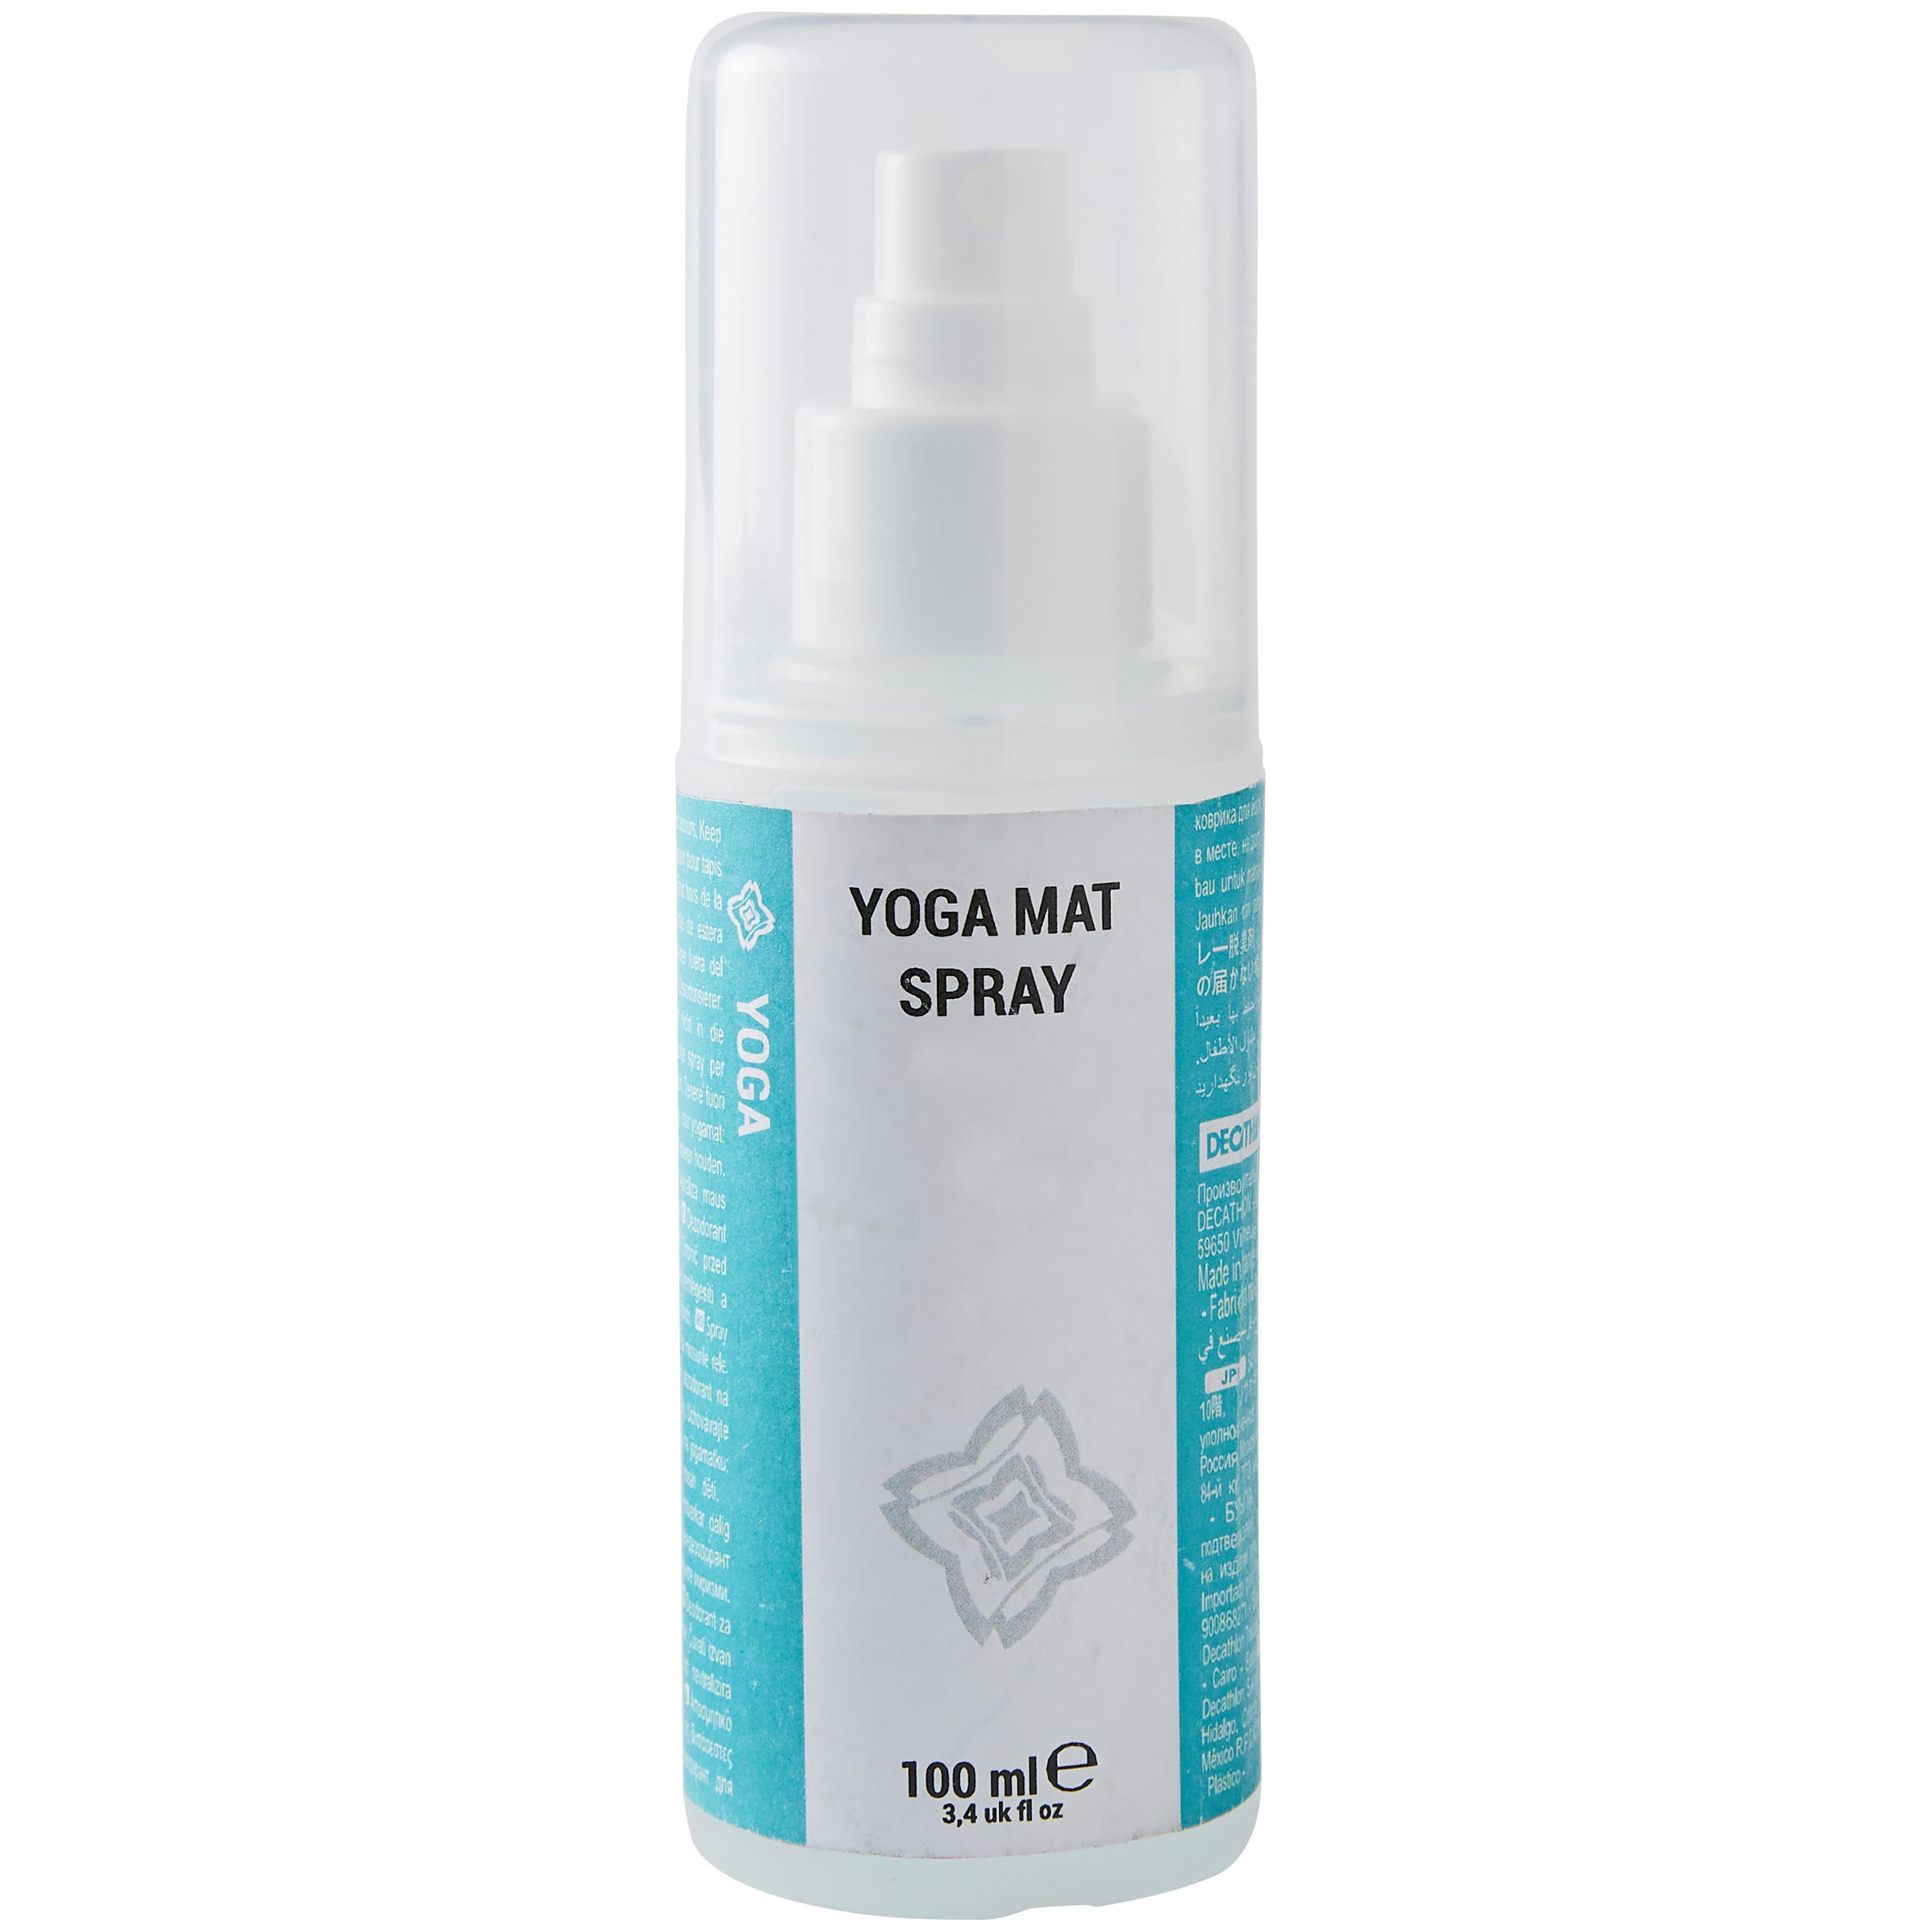 Spray cu uleiuri esențiale pentru salteaua de yoga La Oferta Online decathlon imagine La Oferta Online